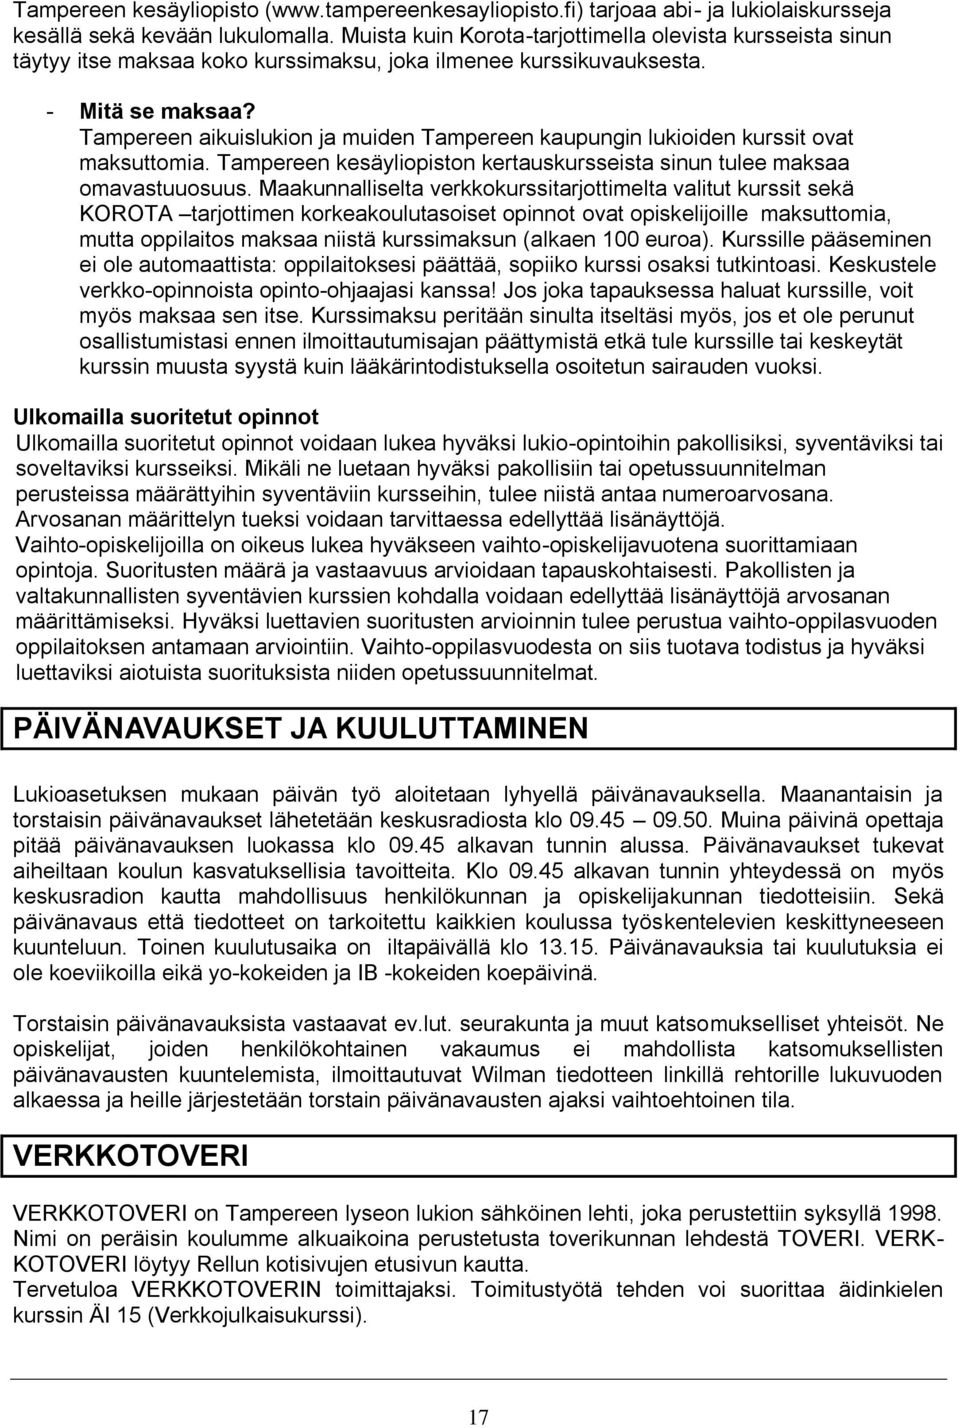 Tampereen aikuislukion ja muiden Tampereen kaupungin lukioiden kurssit ovat maksuttomia. Tampereen kesäyliopiston kertauskursseista sinun tulee maksaa omavastuuosuus.